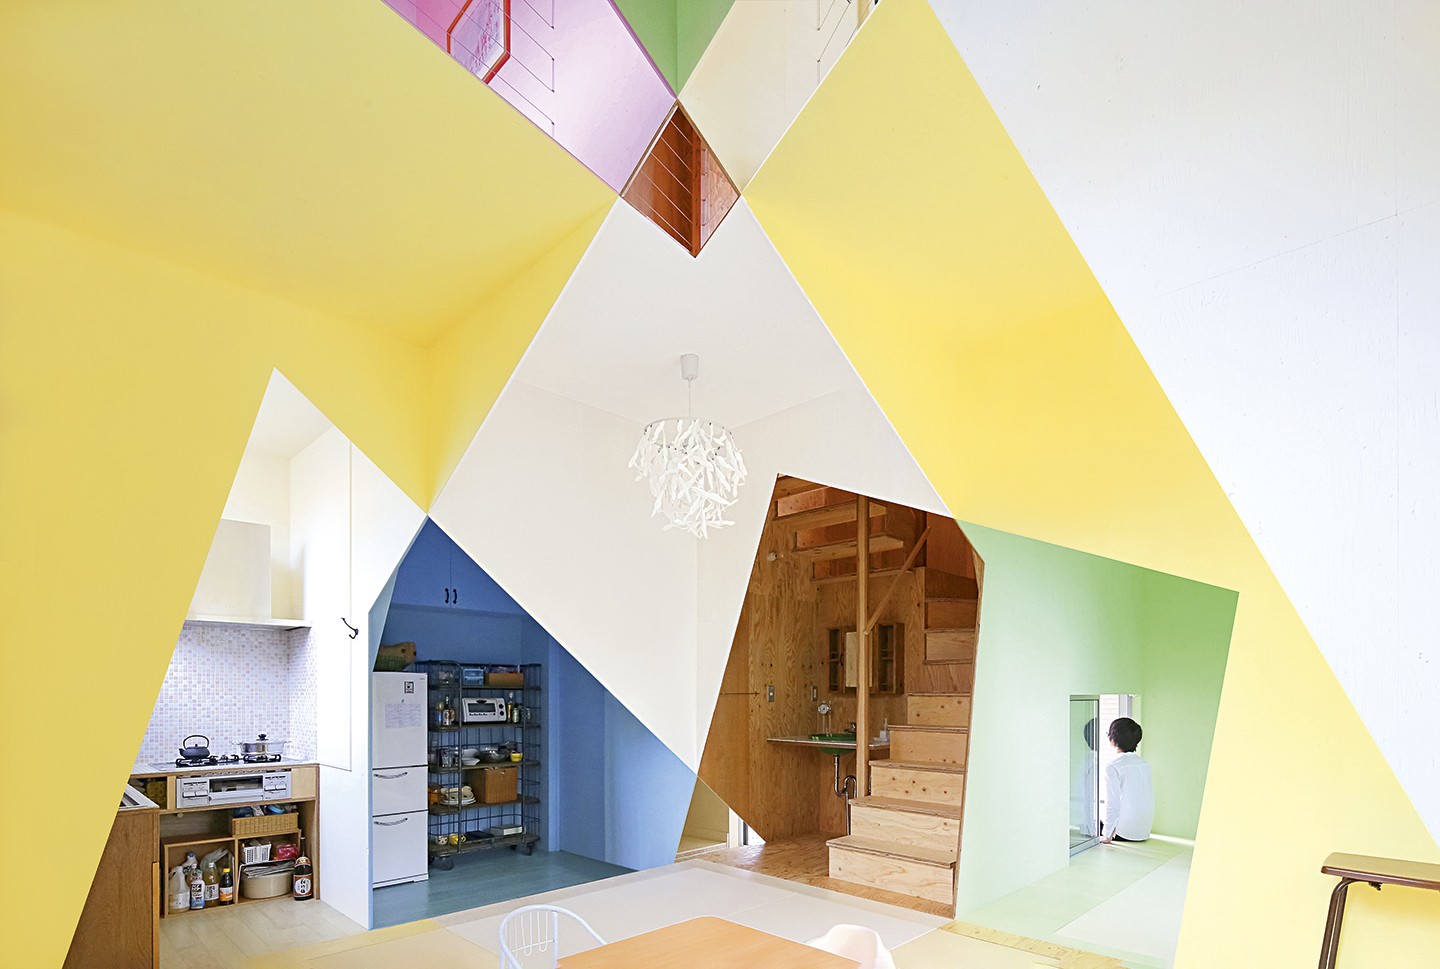 Casa de 79 m² em Tóquio surpreende com uso geométrico das cores (Foto: Kazuyasu Kochi/Divulgação)